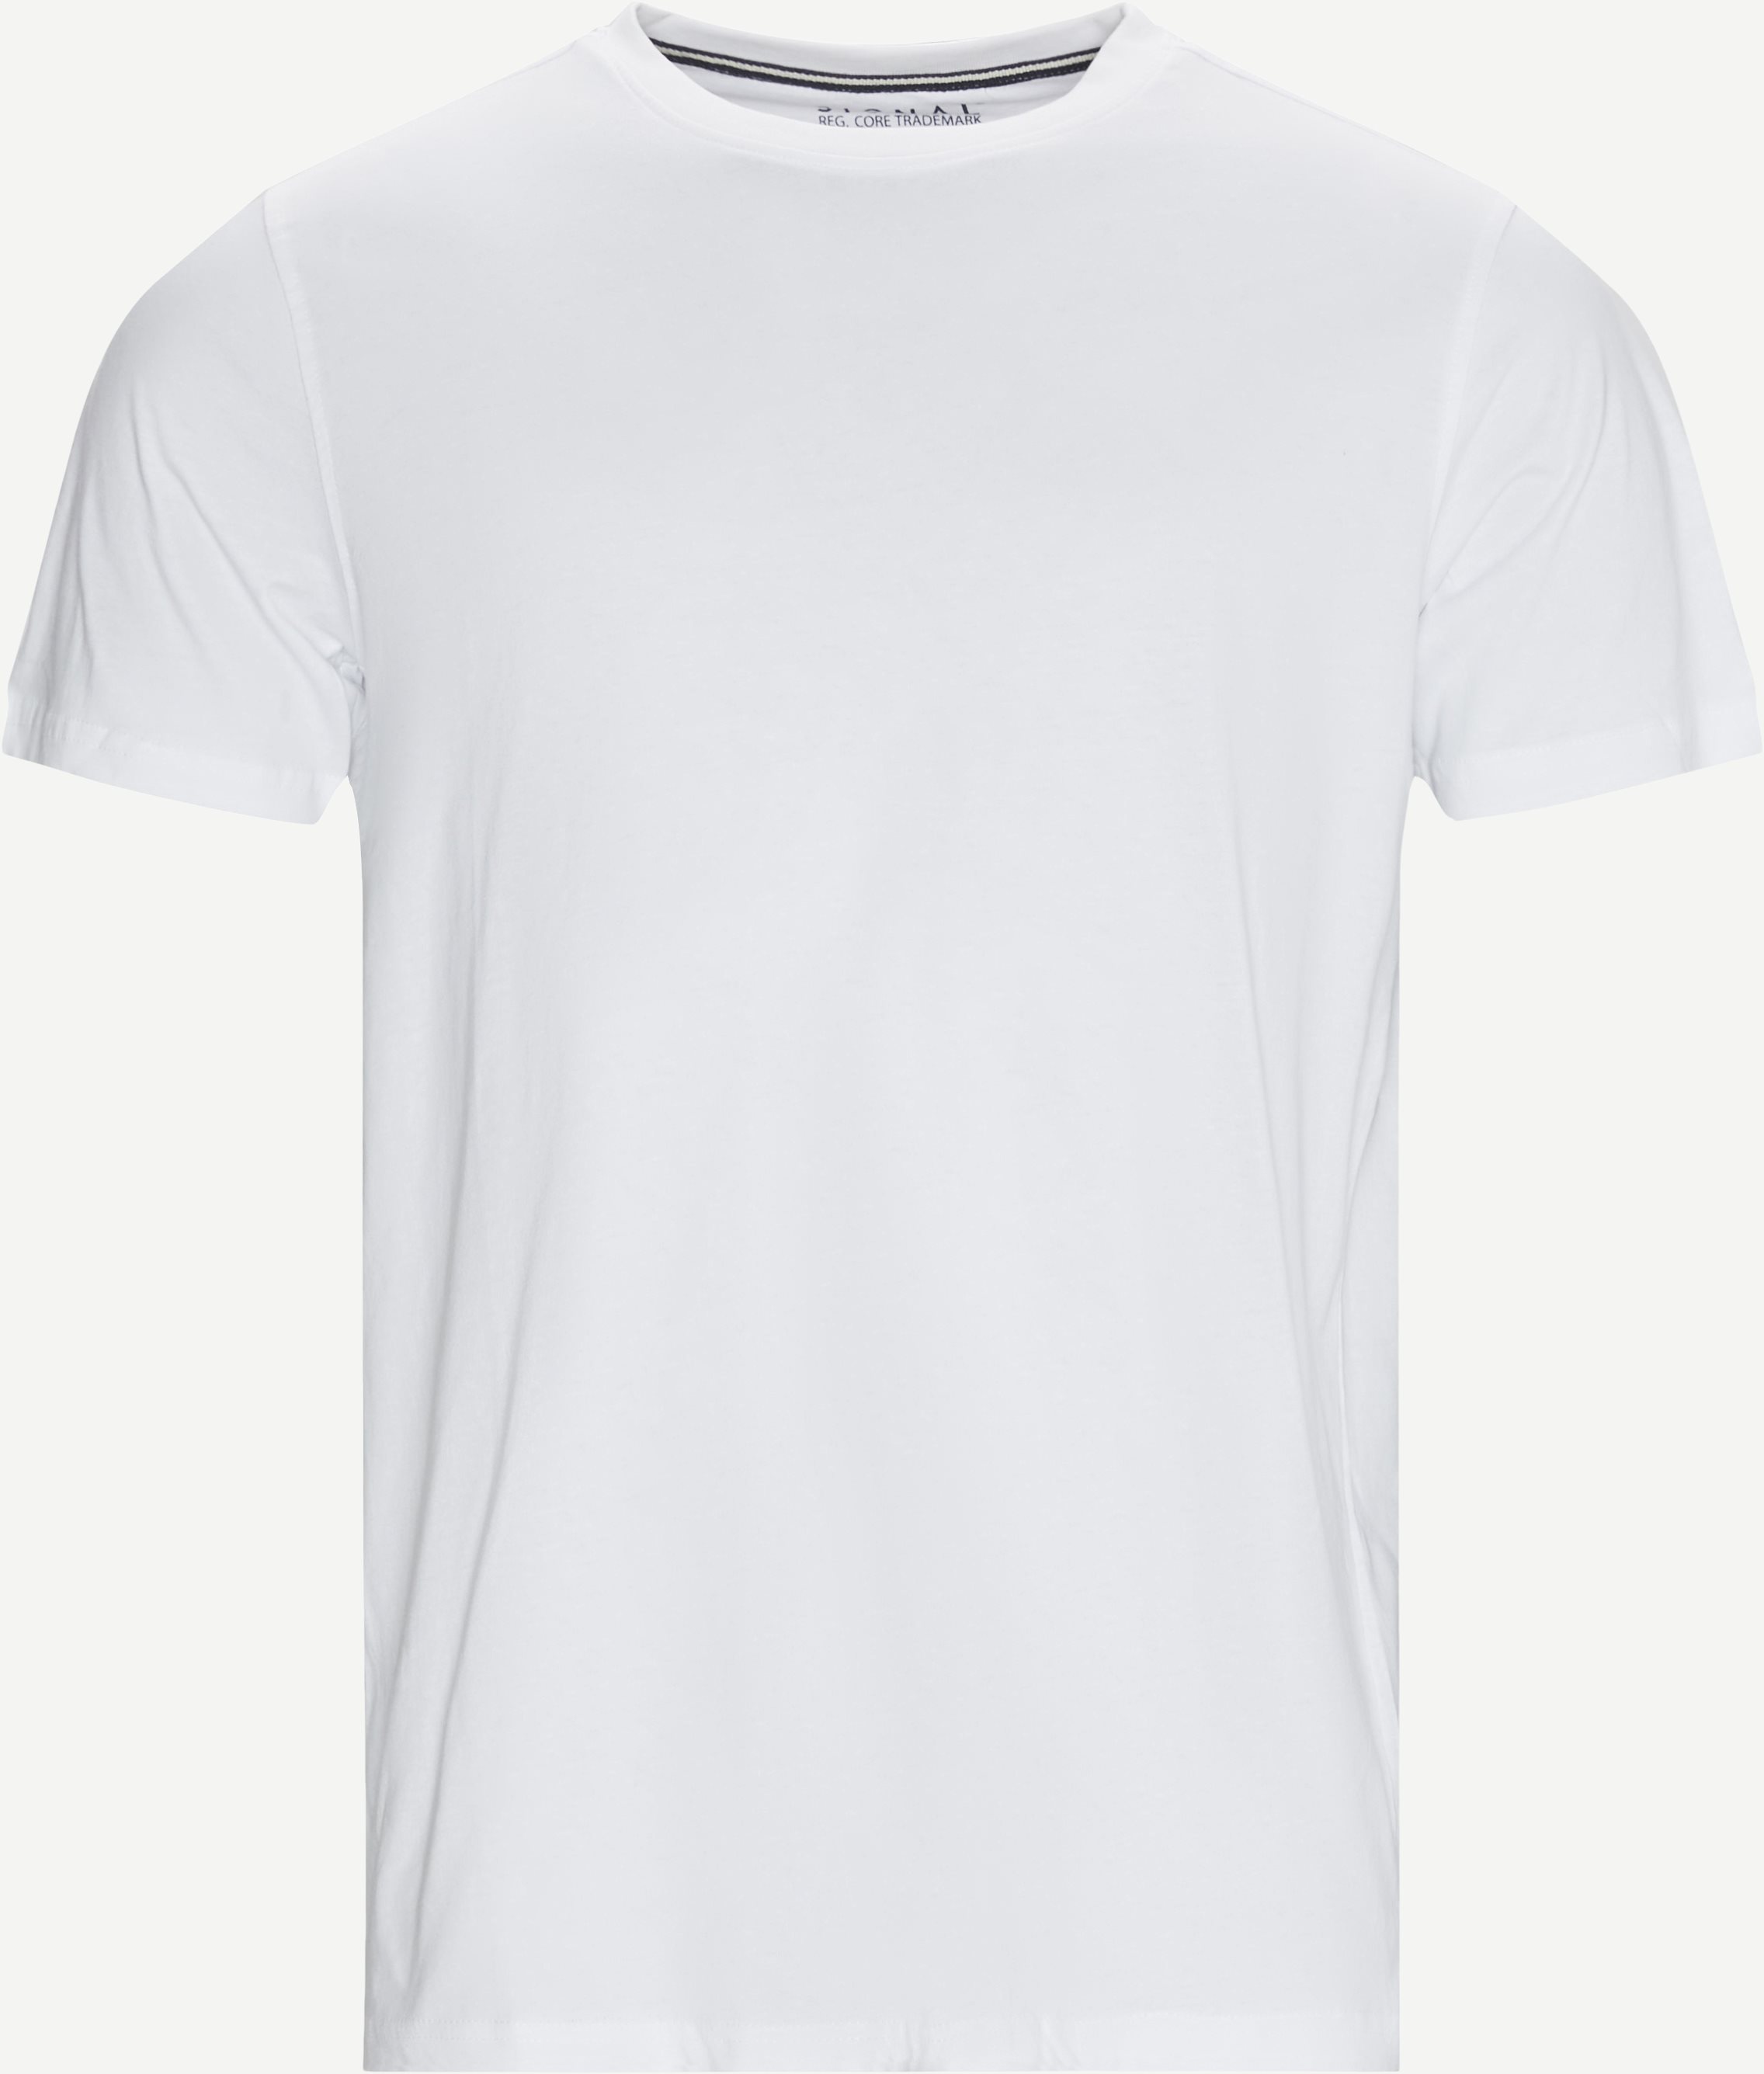 Wayne T-shirt - T-shirts - Regular fit - White